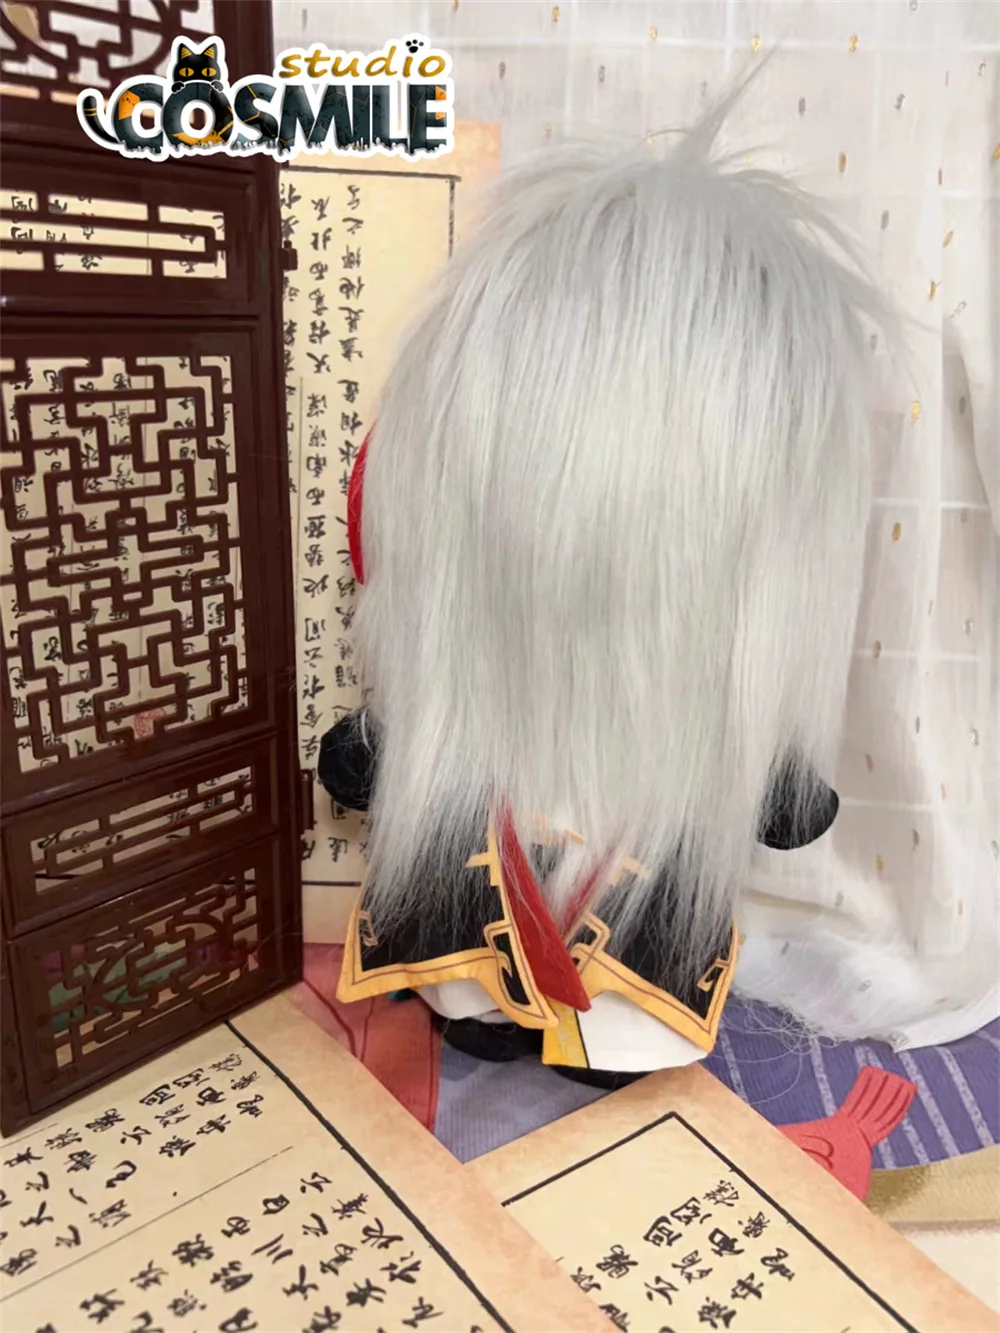 Космическая игра Honkai Honkai: Звездная Железная дорога яп. スタ Yuan Плюшевая кукла 20 см, Одежда для тела, Игрушка Sa Oct 3